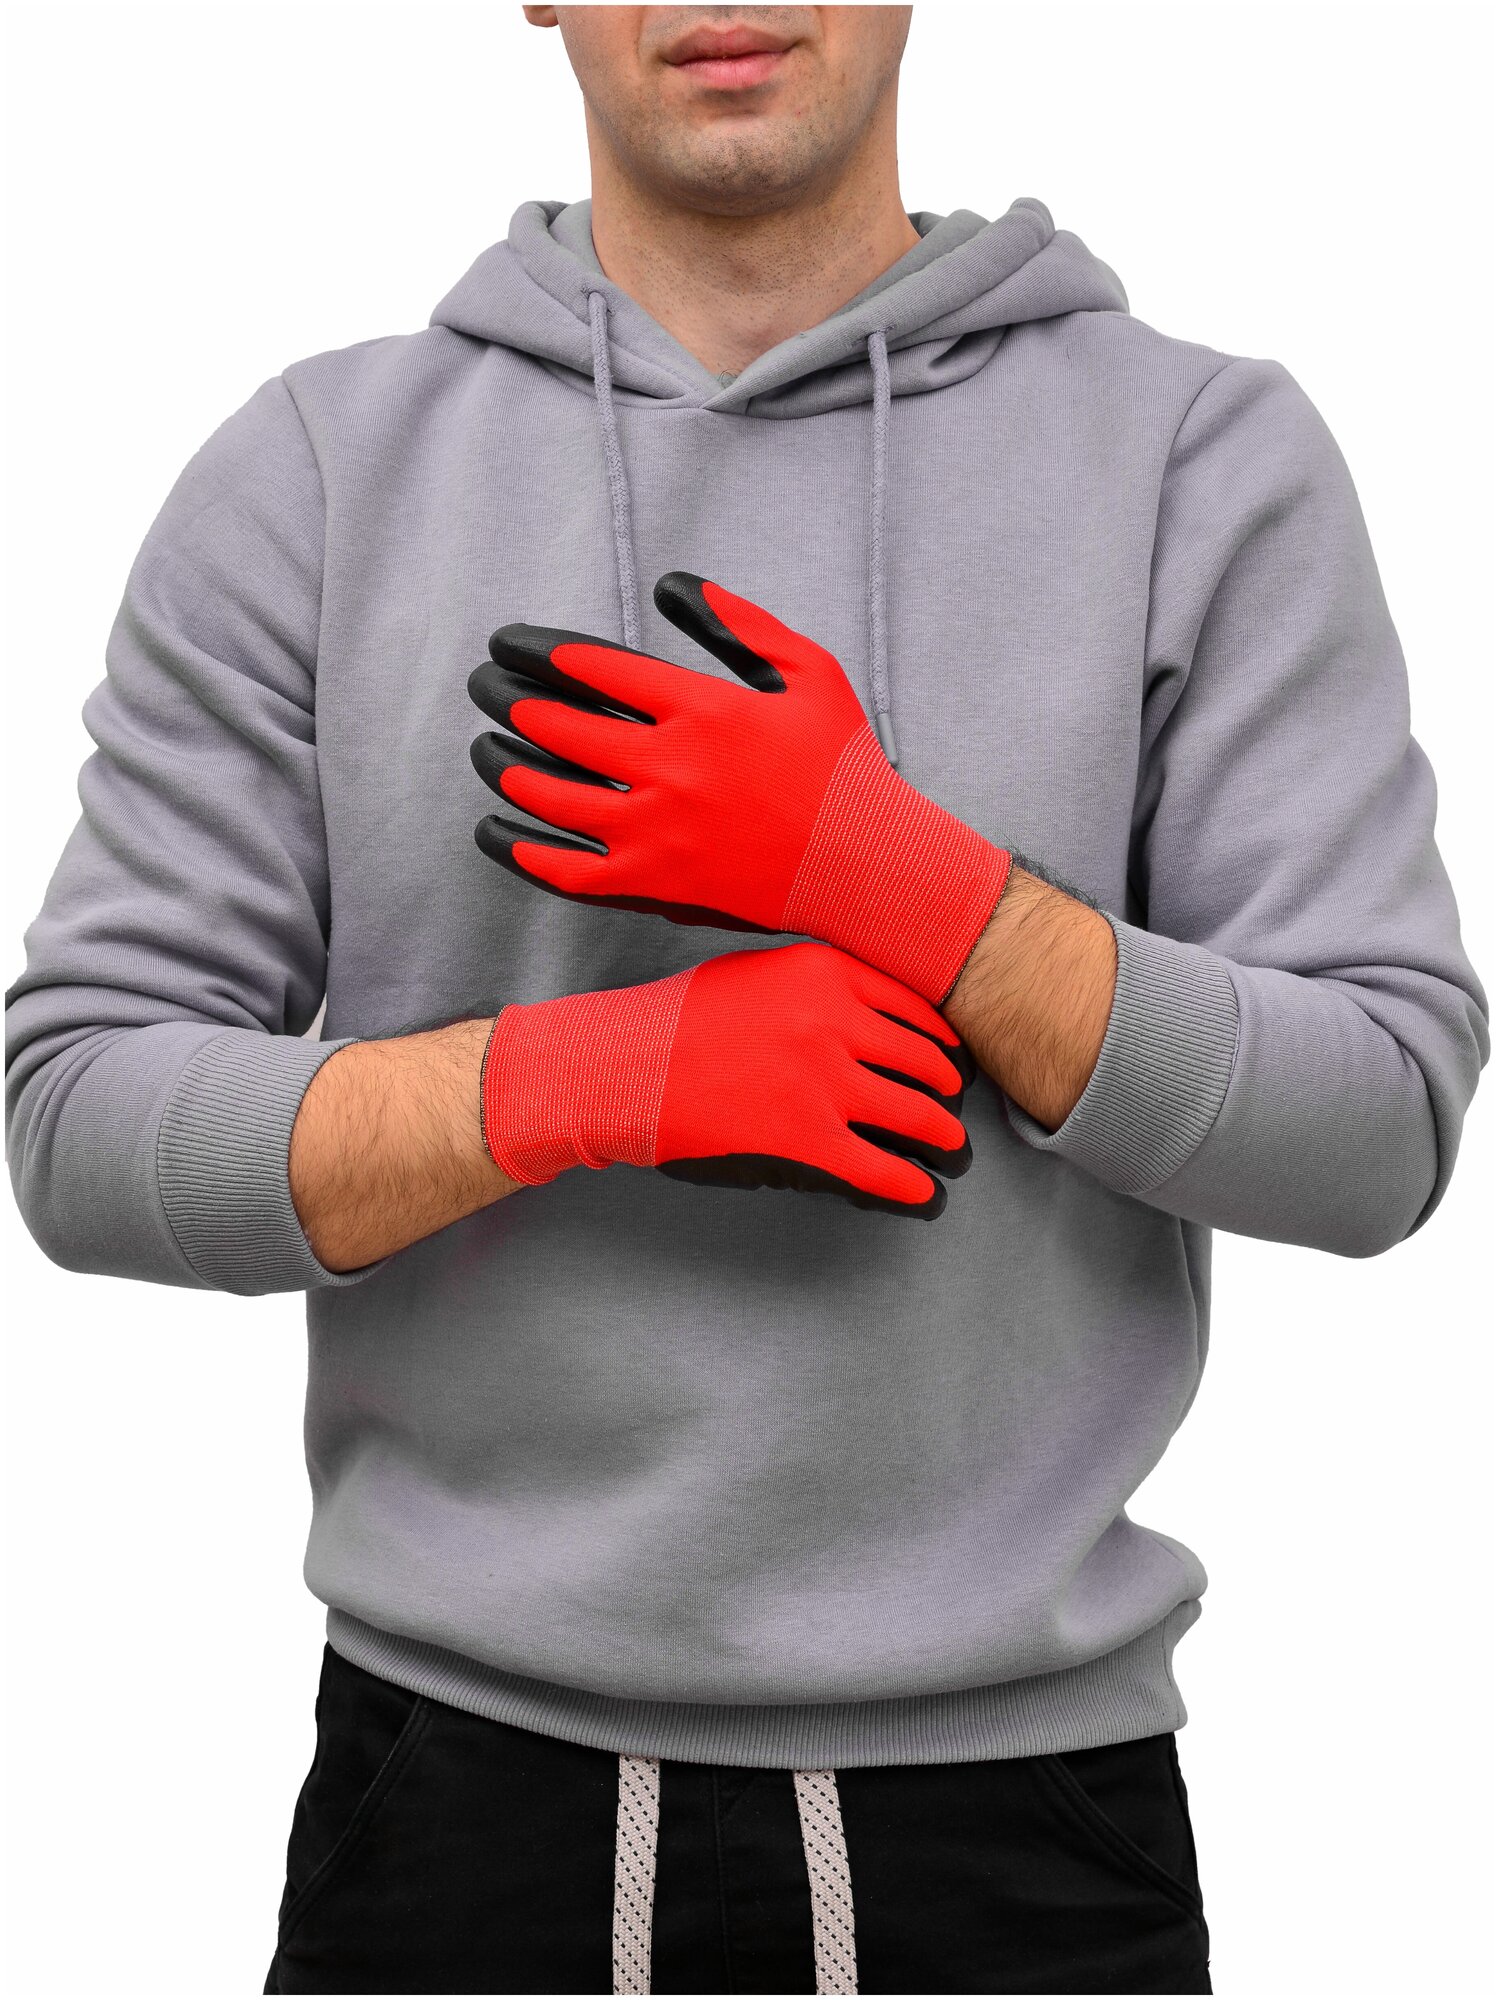 Перчатки нейлоновые с нитриловым обливом Люкс, садовые перчатки рабочие, красные, 5 пар